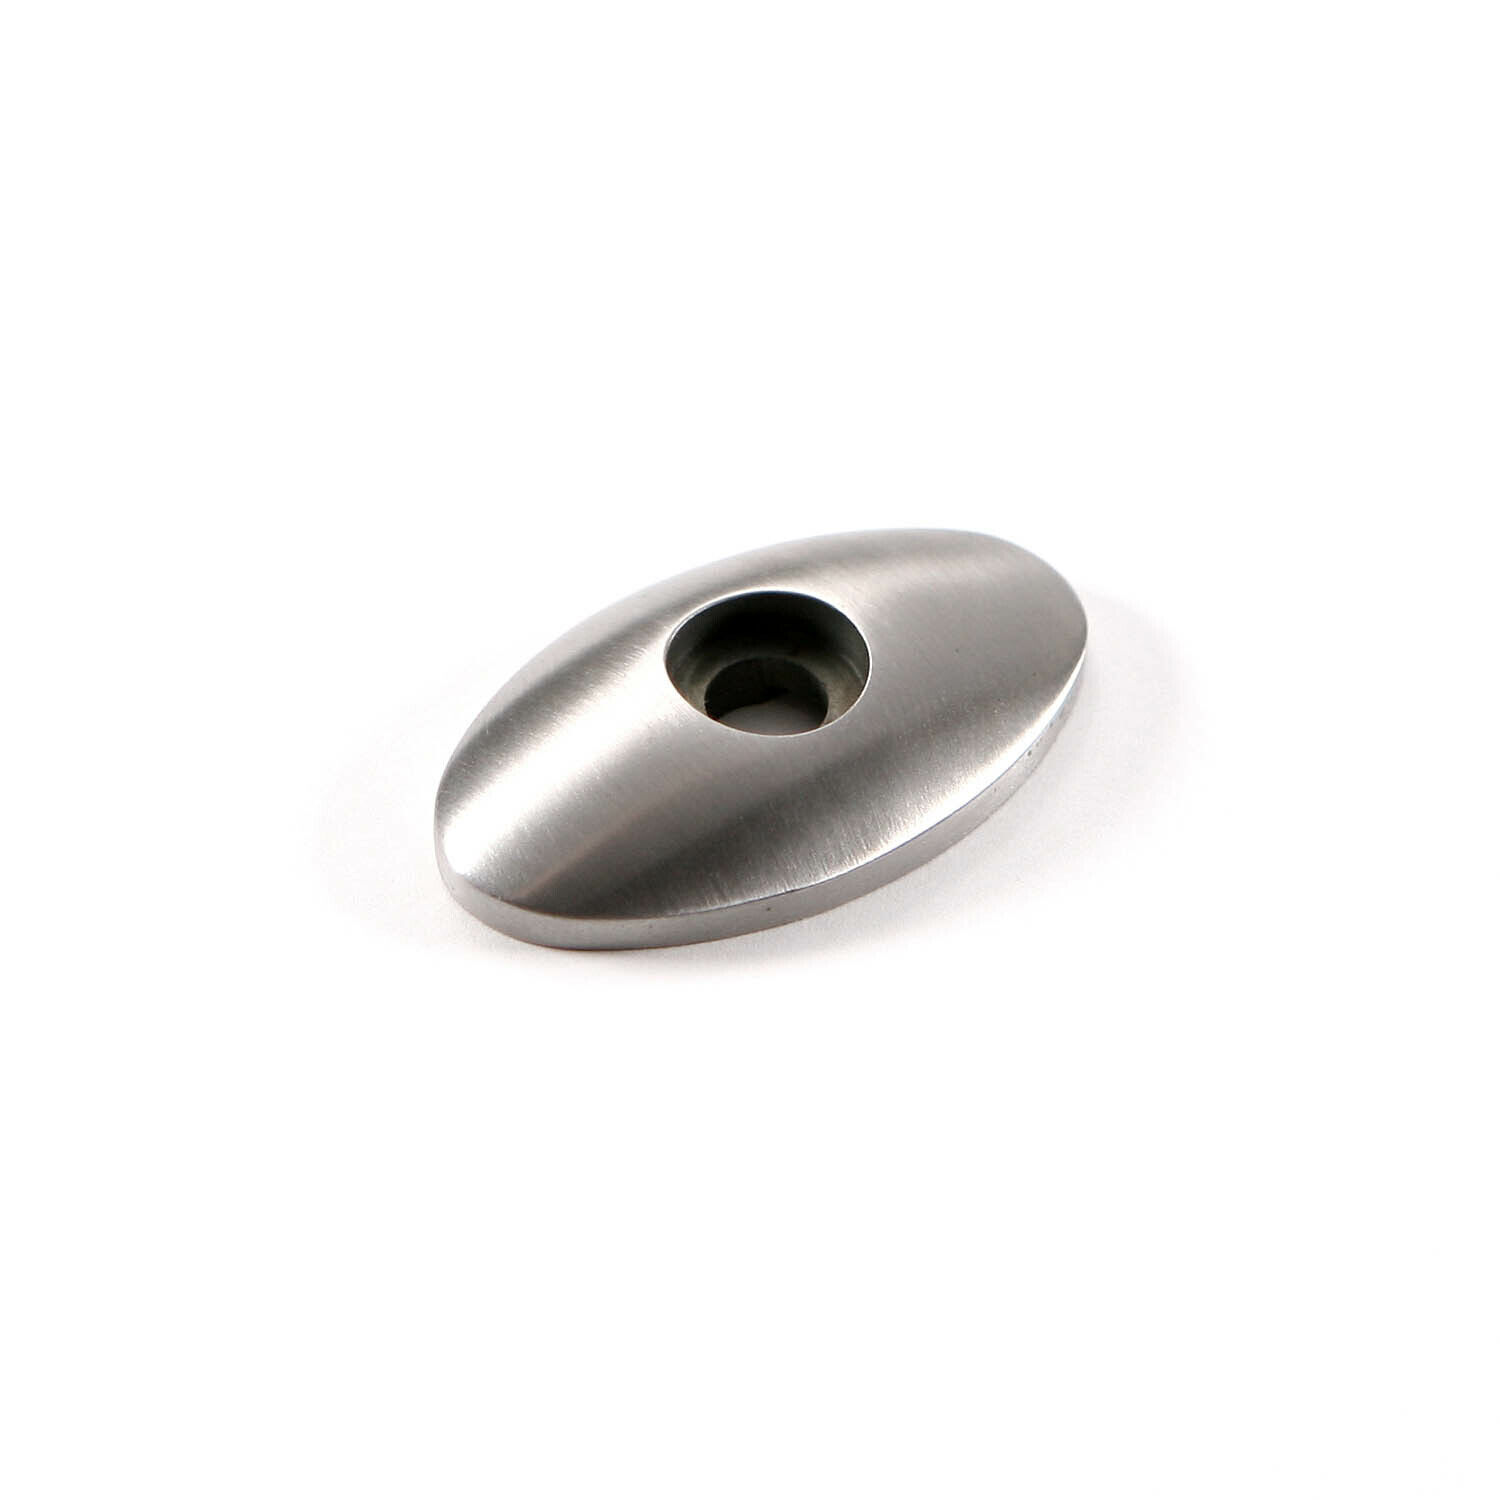 Pommel - Radiused Oval - Stainless Steel - (Harvey Dean Design)